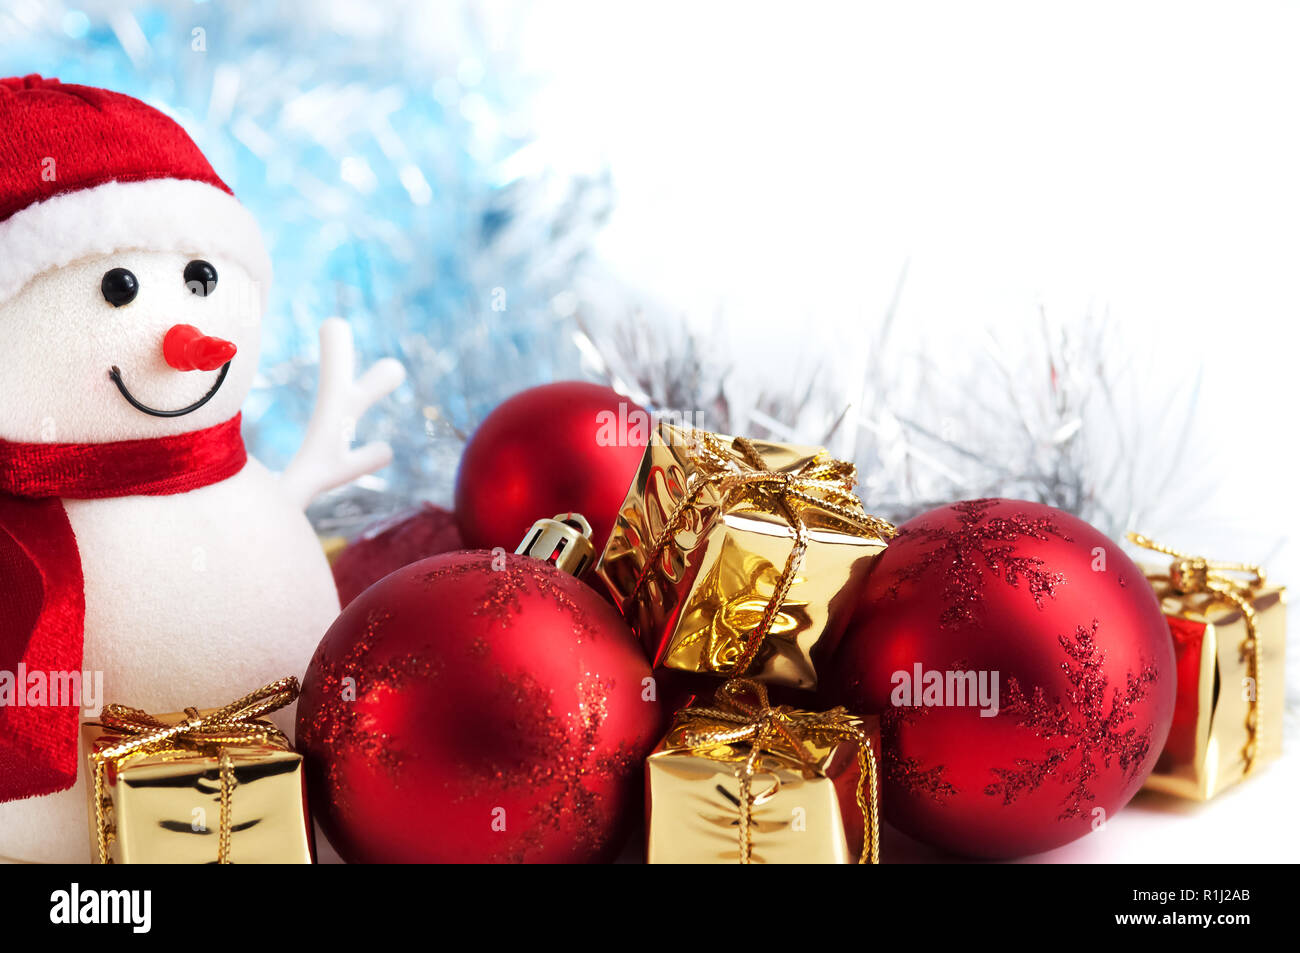 Frohe Weihnachten Neujahr Schneemann Geschenke In Goldenen Und Roten Kugeln Auf Einem Blauen Und Weissen Bokeh Hintergrund Stockfotografie Alamy